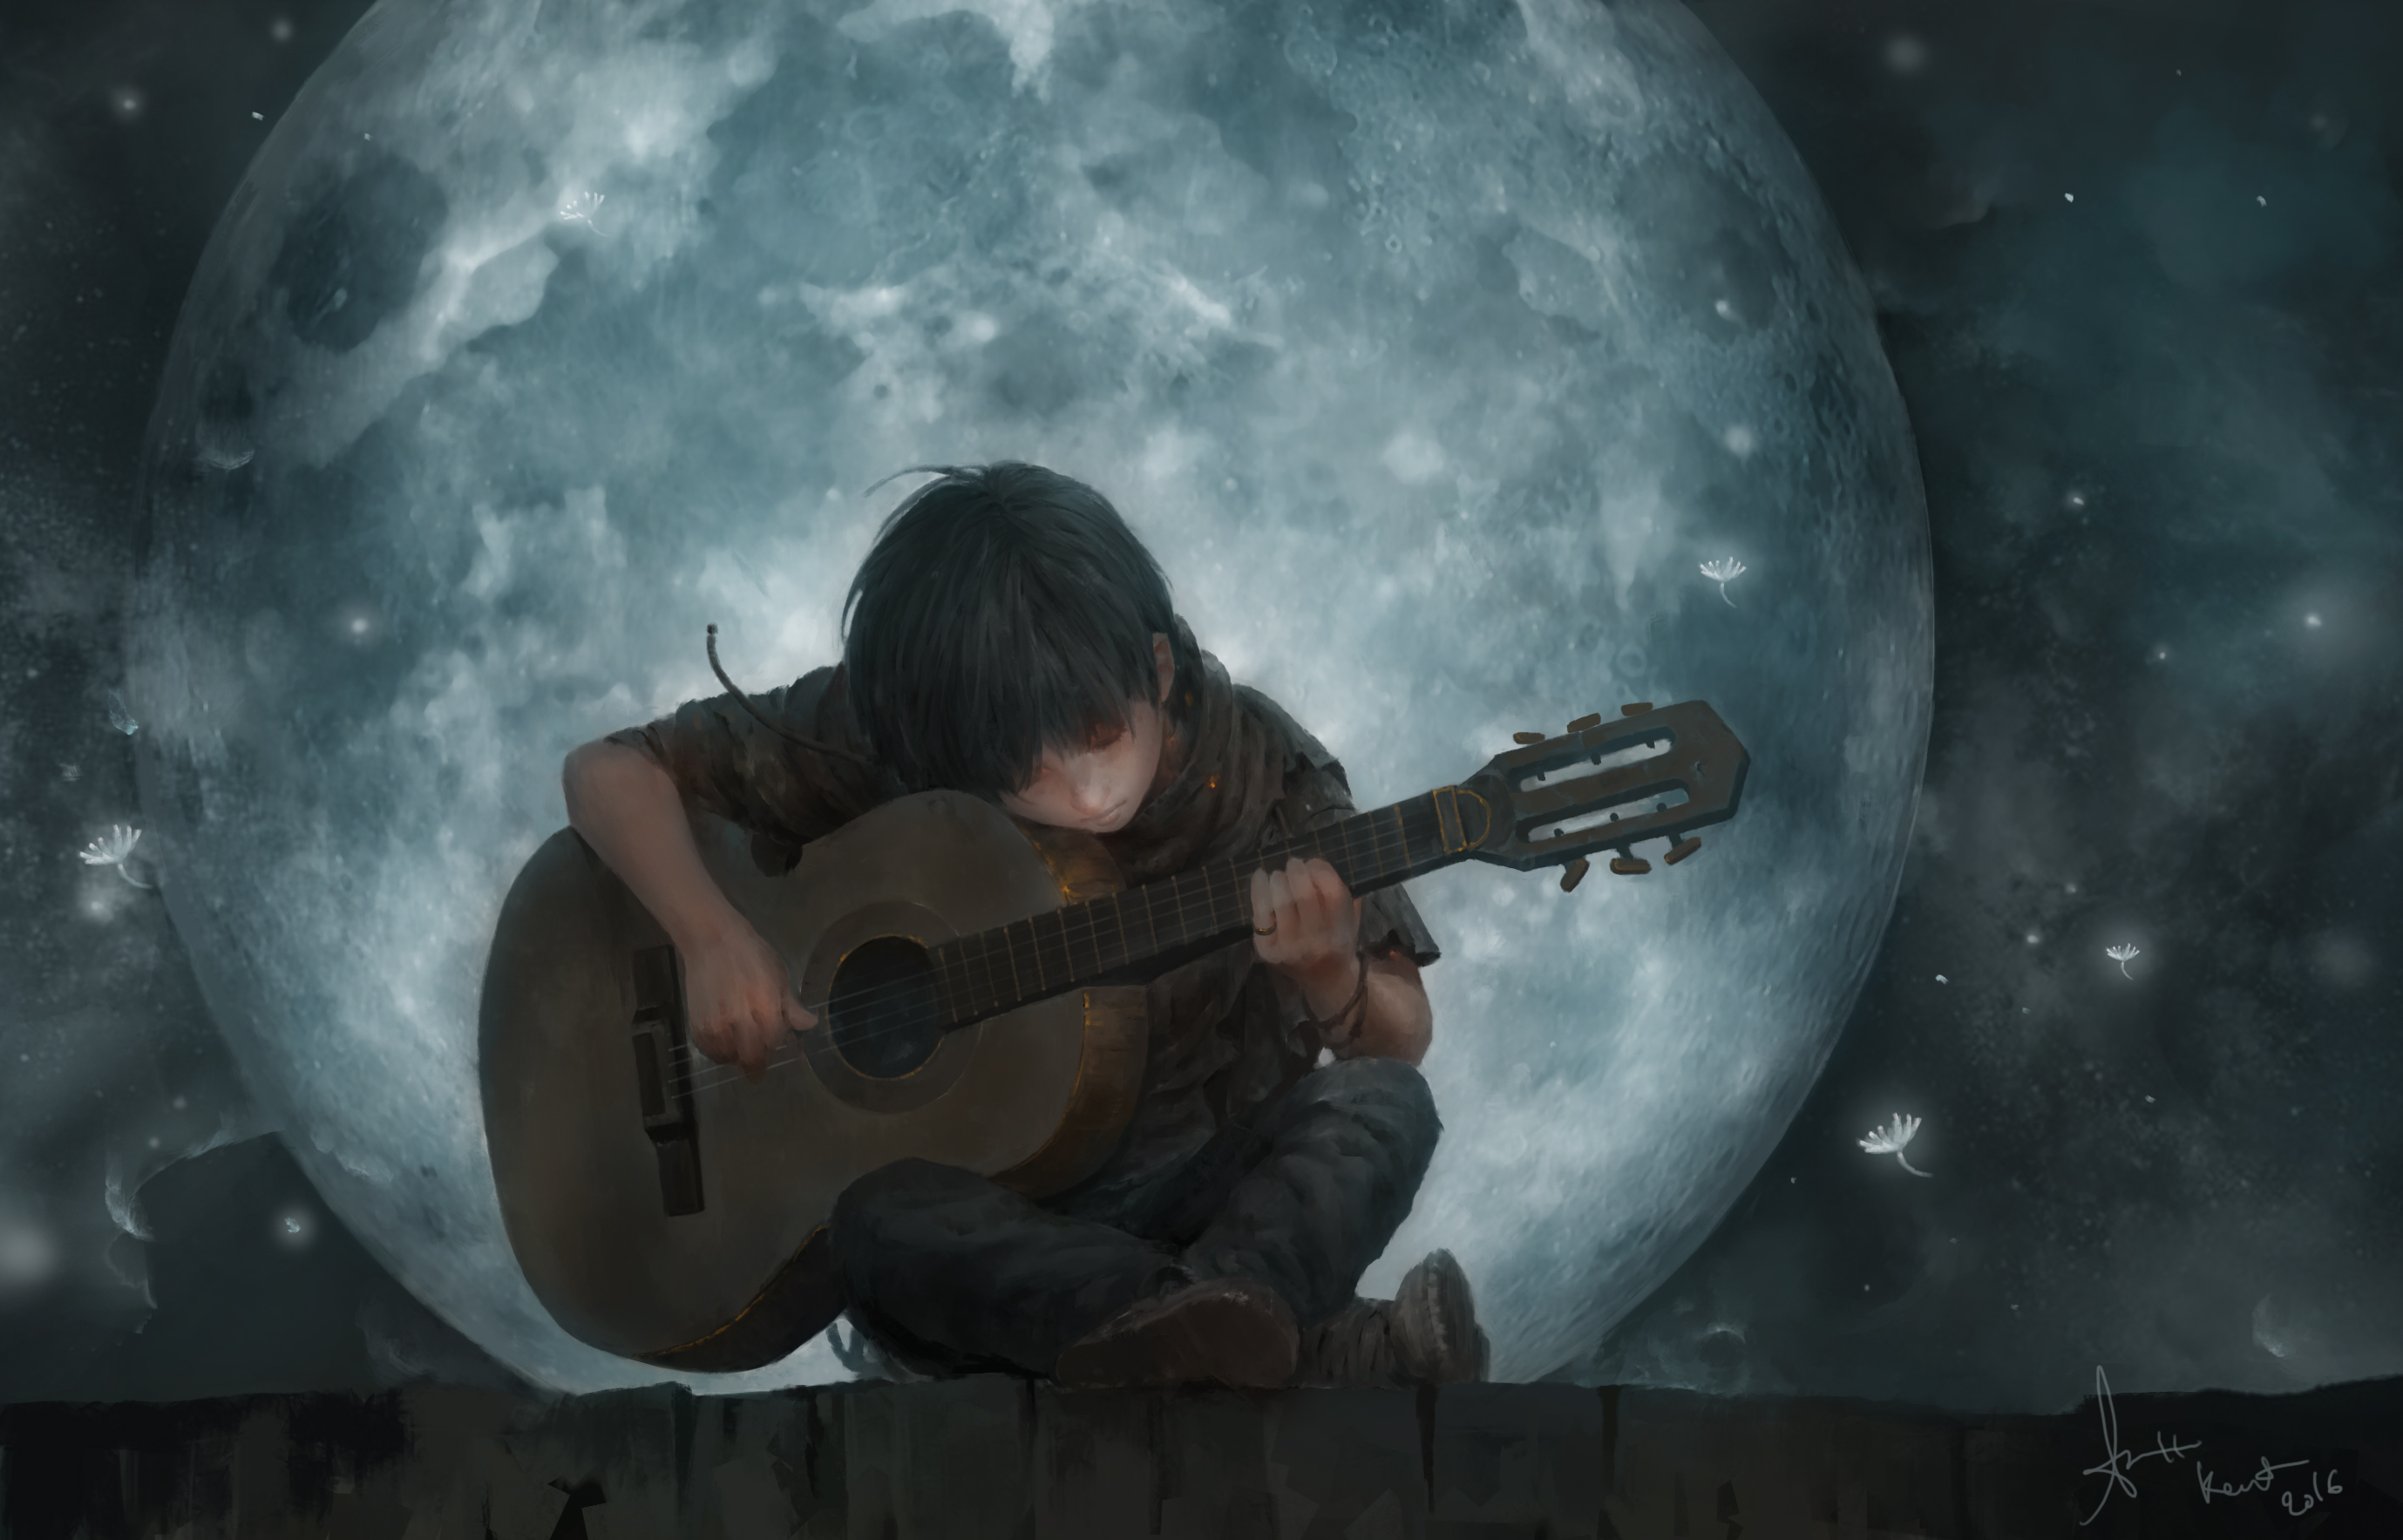 Little Boy on Full Moon Night by Lee KenT